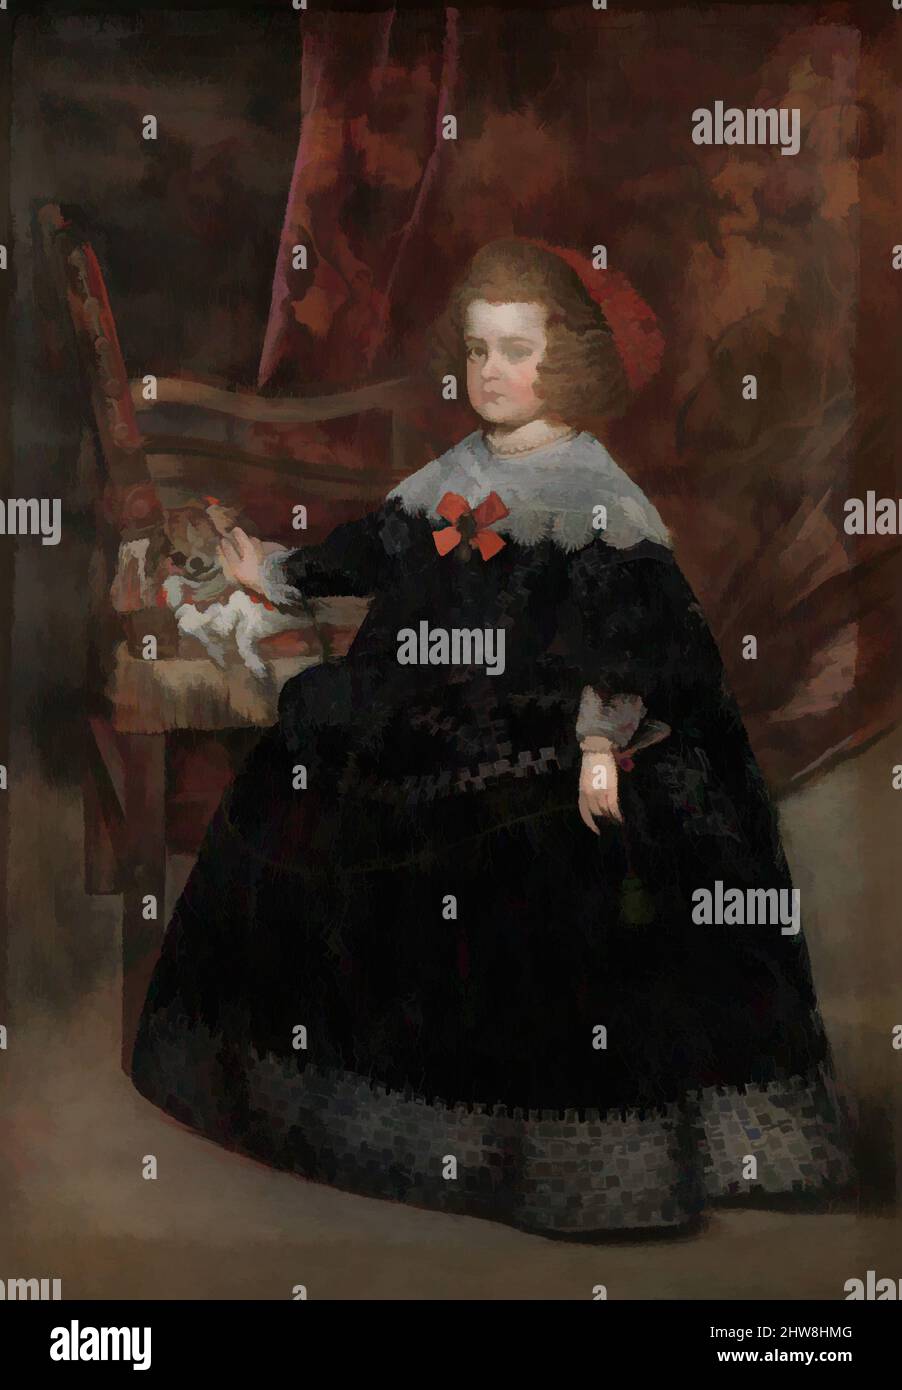 Arte ispirata da María Teresa (1638-1683), Infanta di Spagna, ca. 1645, olio su tela, 58 1/4 x 40 1/2 poll. (148 x 102,9 cm), dipinti, Juan Bautista Martínez del Mazo (spagnolo, Cuenca ca. 1612–1667 Madrid), Mazo era l'assistente più dotato di Velázquez e suo genero, avendo sposato opere classiche modernizzate da Artotop con un tuffo di modernità. Forme, colore e valore, impatto visivo accattivante sulle emozioni artistiche attraverso la libertà delle opere d'arte in modo contemporaneo. Un messaggio senza tempo che persegue una nuova direzione selvaggiamente creativa. Artisti che si rivolgono al supporto digitale e creano l'NFT Artotop Foto Stock